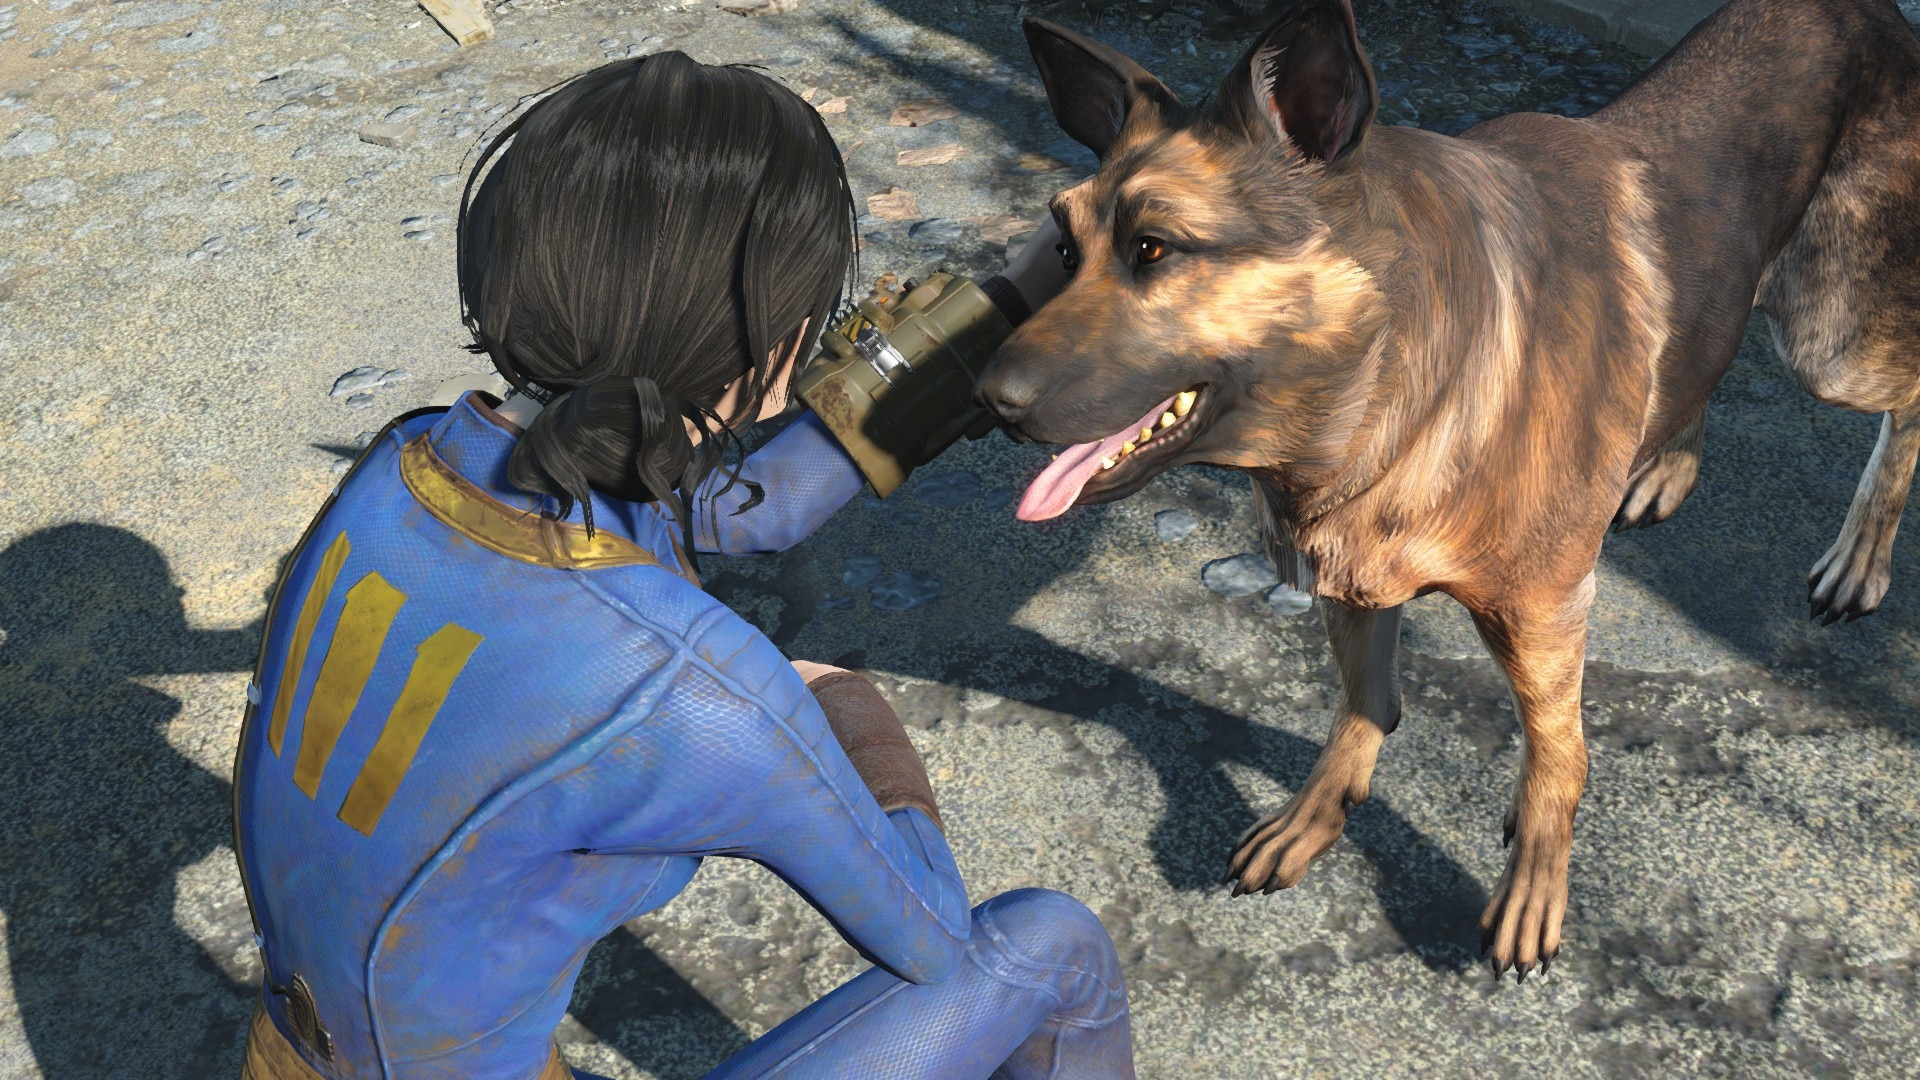 Еженедельный чарт Steam: продажи игр серии Fallout взлетели на фоне скидок и премьеры сериала  две из них вошли в топ-10